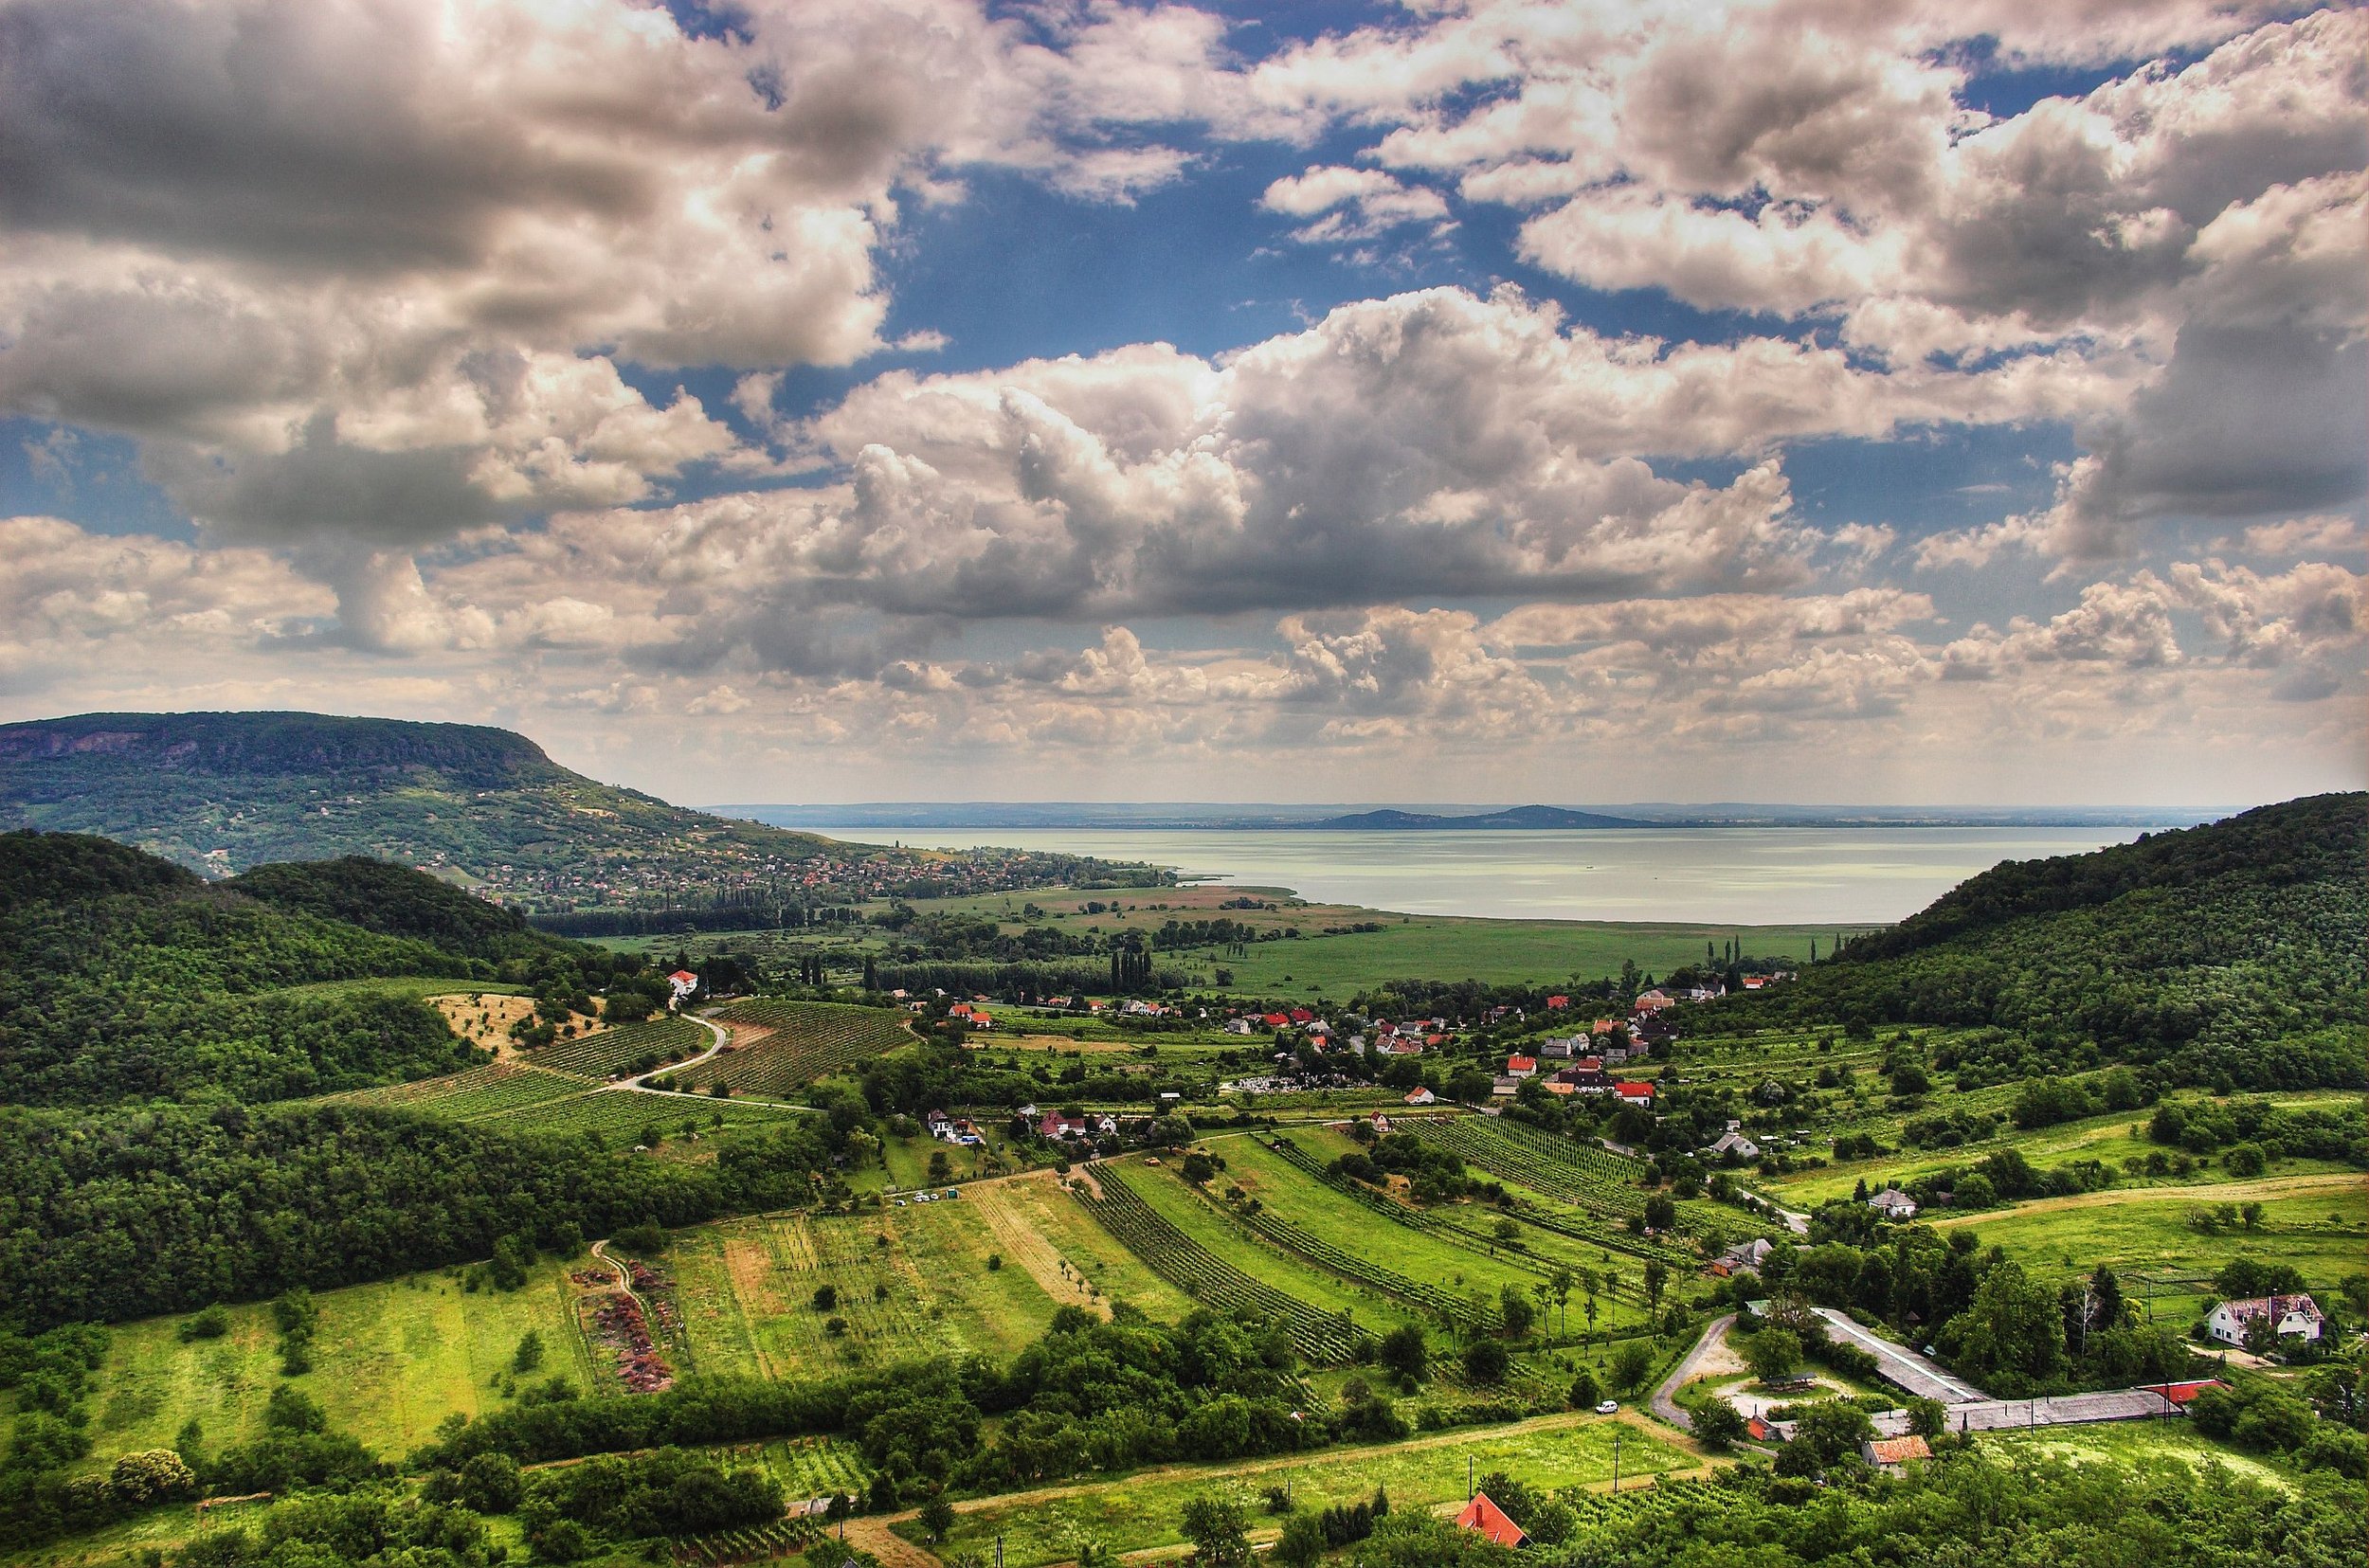 2560px-Balaton_Hungary_Landscape.jpeg